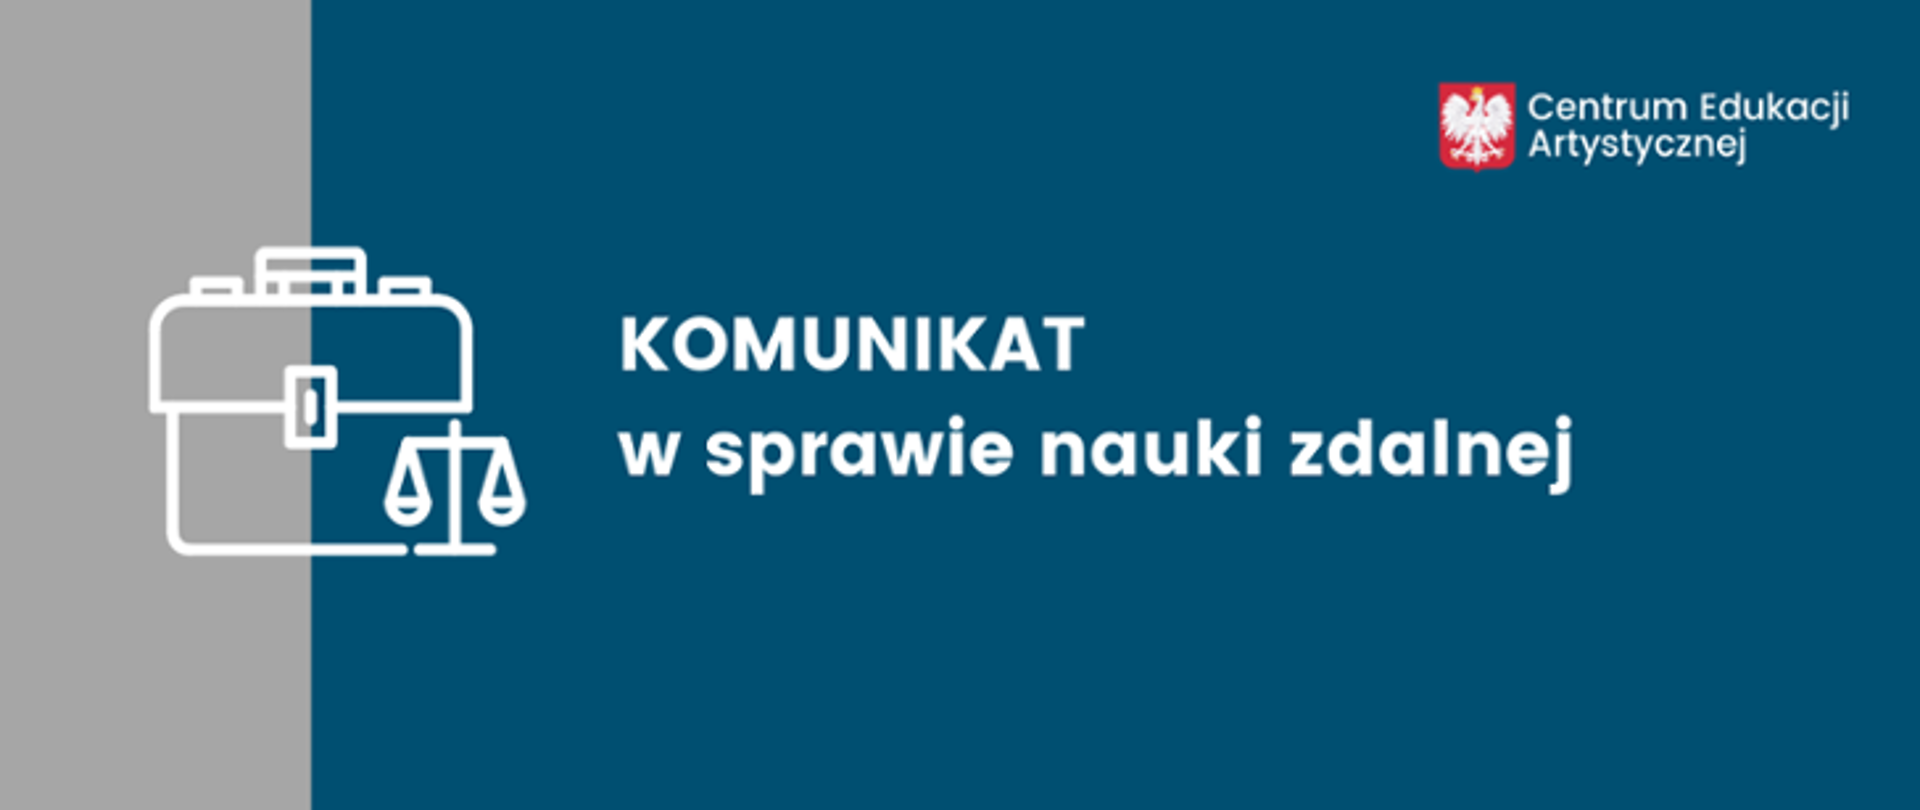 Niebiesko-szara grafika z ikoną teczki i wagi prawniczej z tekstem "KOMUNIKAT w sprawie nauki zdalnej". W prawym górnym rogu godło polski i napis Centrum Edukacji Artystycznej.